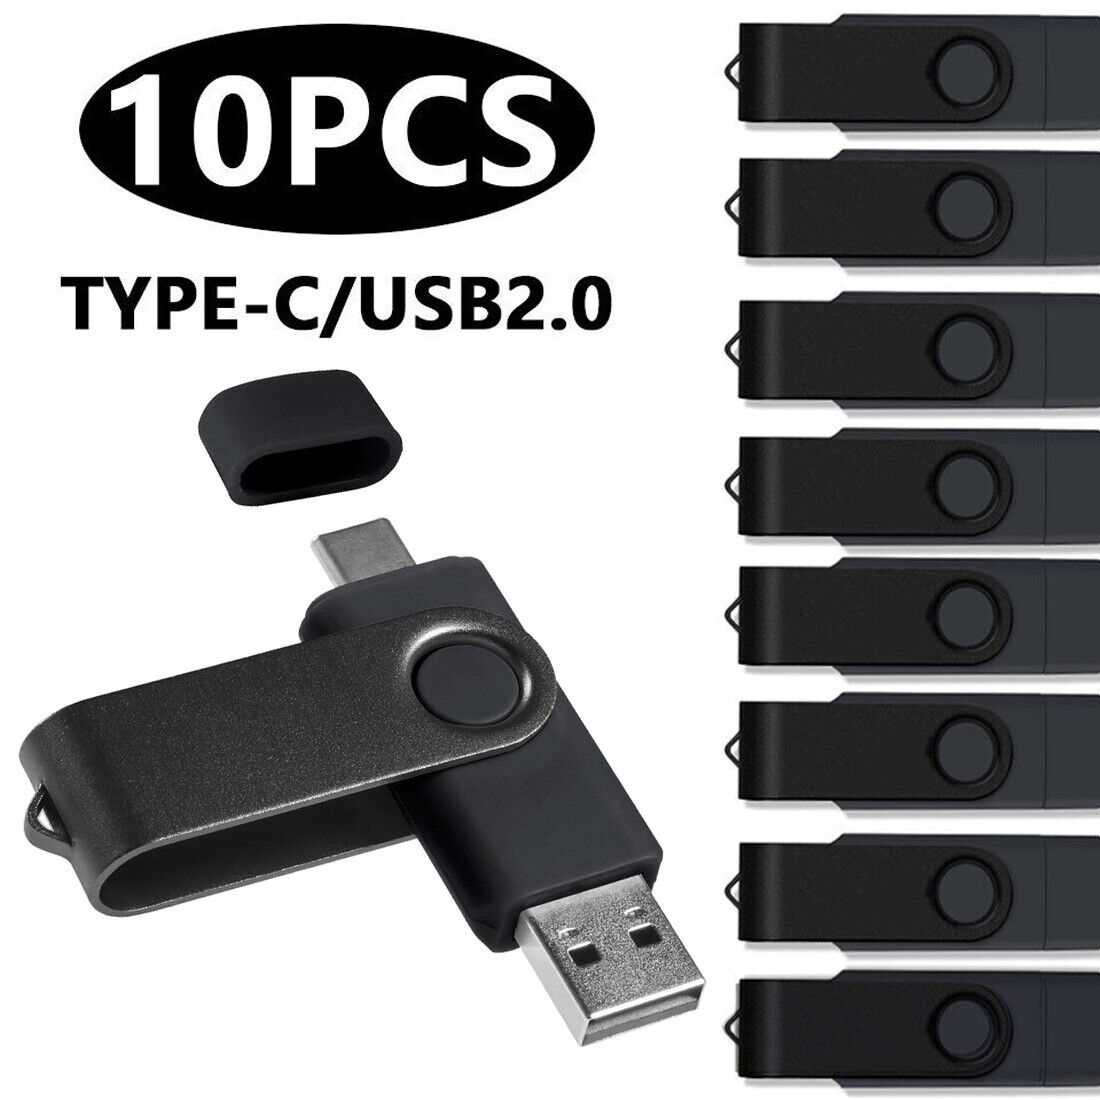 Wholesale 10PCS OTG 2.0 USB flash drives 1GB 2GB 4GB 8GB 16GB 32GB 64GB/Pendrive